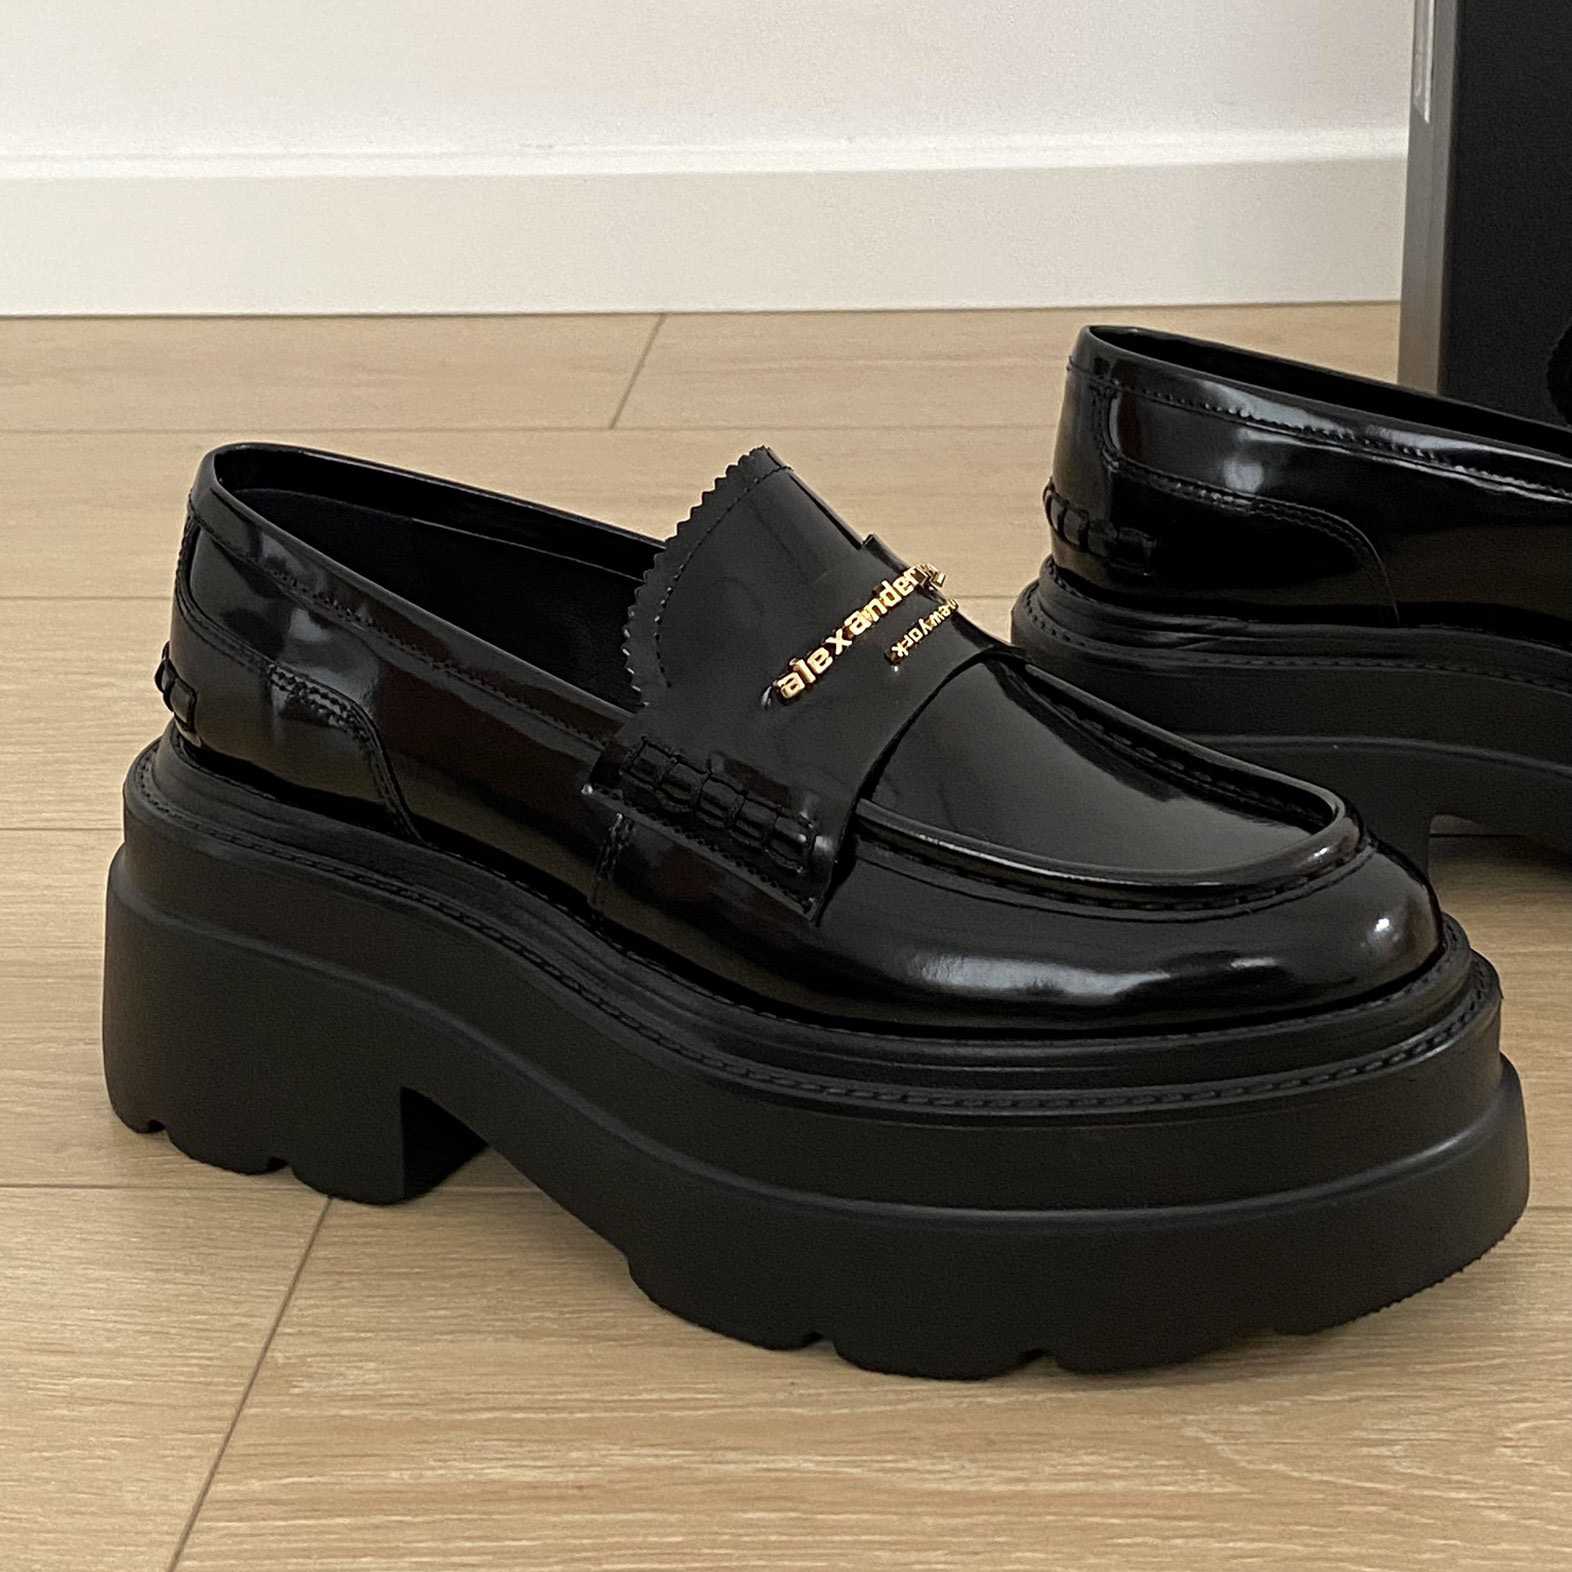 Alexander Wang Carter Platform Loafer In Leather - everydesigner